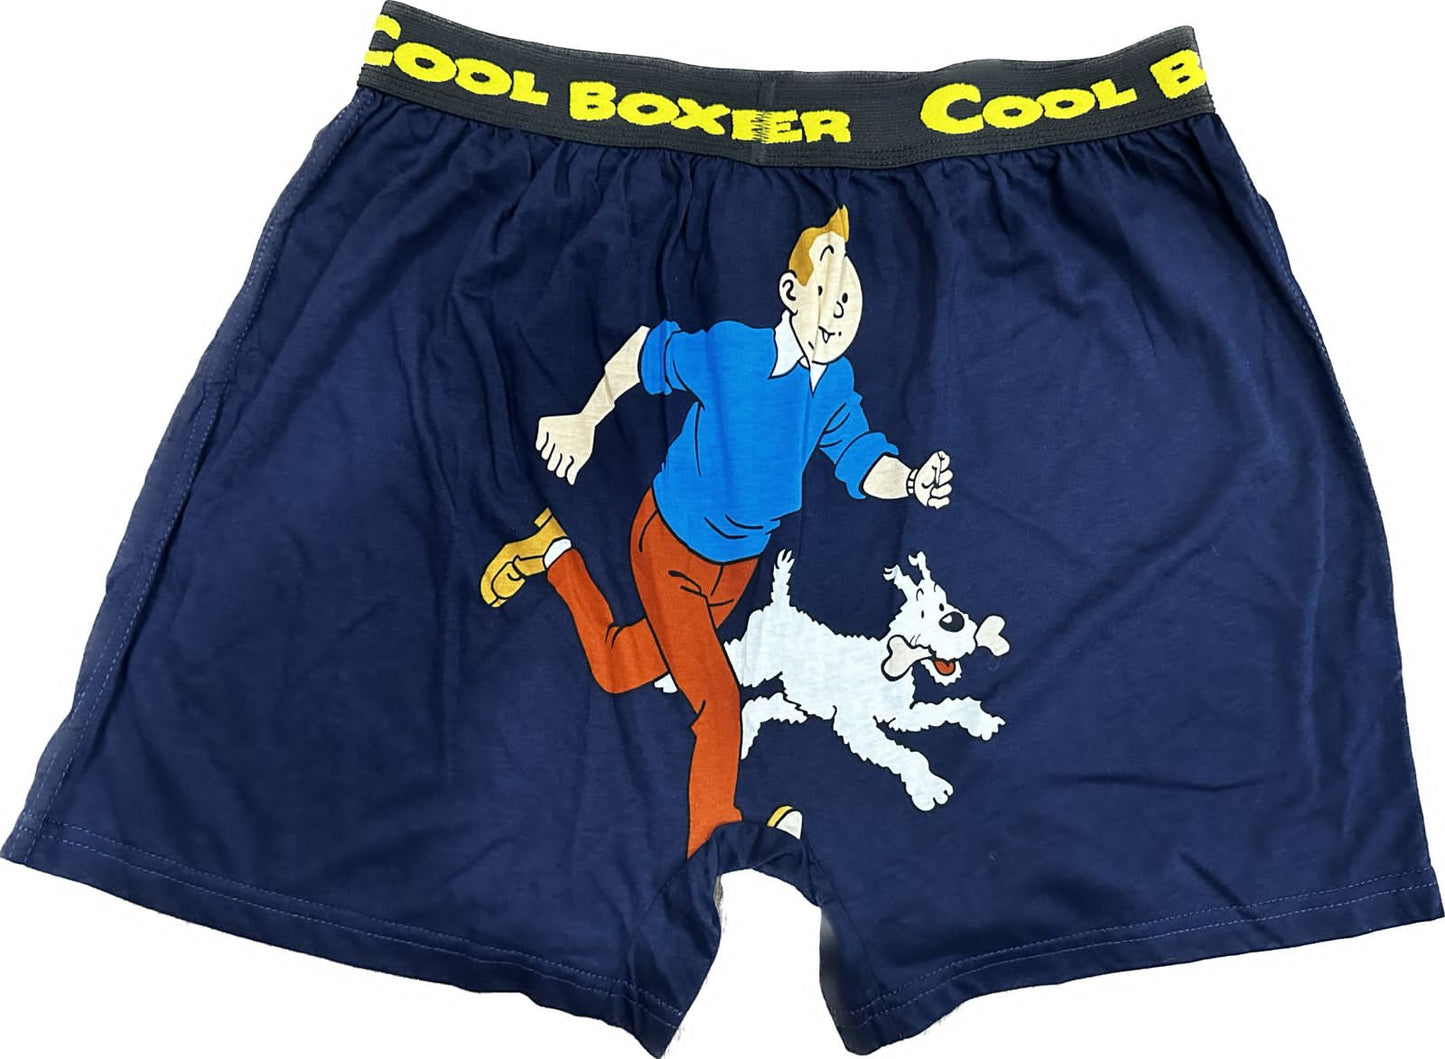 Men "DO WHAT YOU LOVE" Cartoon Boxer